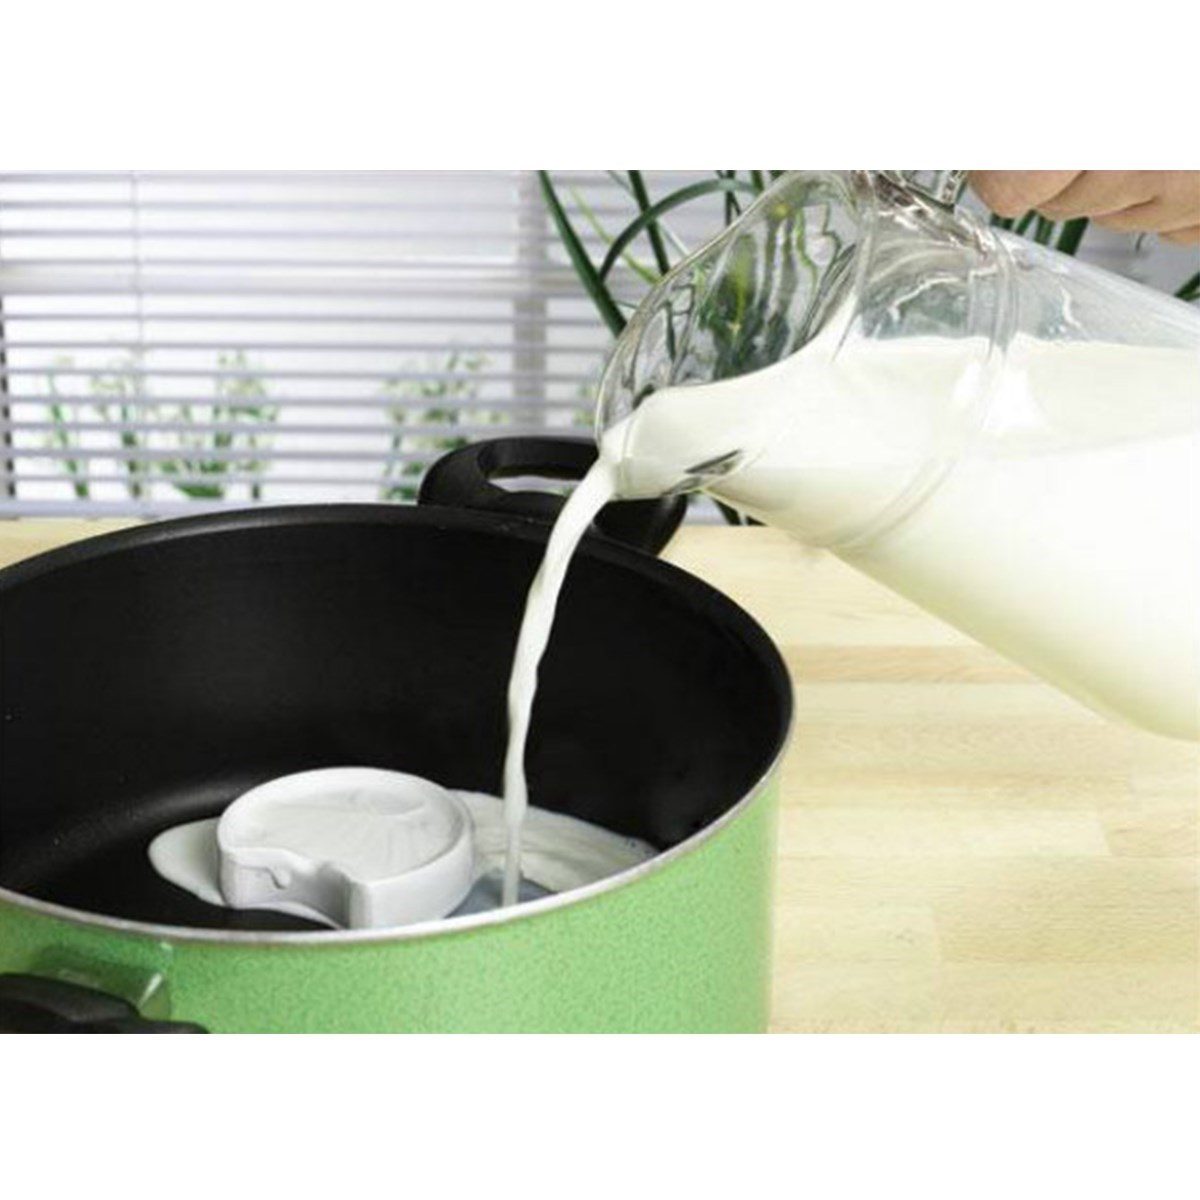 CLZ192 Uyarıcı Pratik Süt Taşırmaz Milk Saver Süt Kaynama Uyarı Süt Taşı (4172)